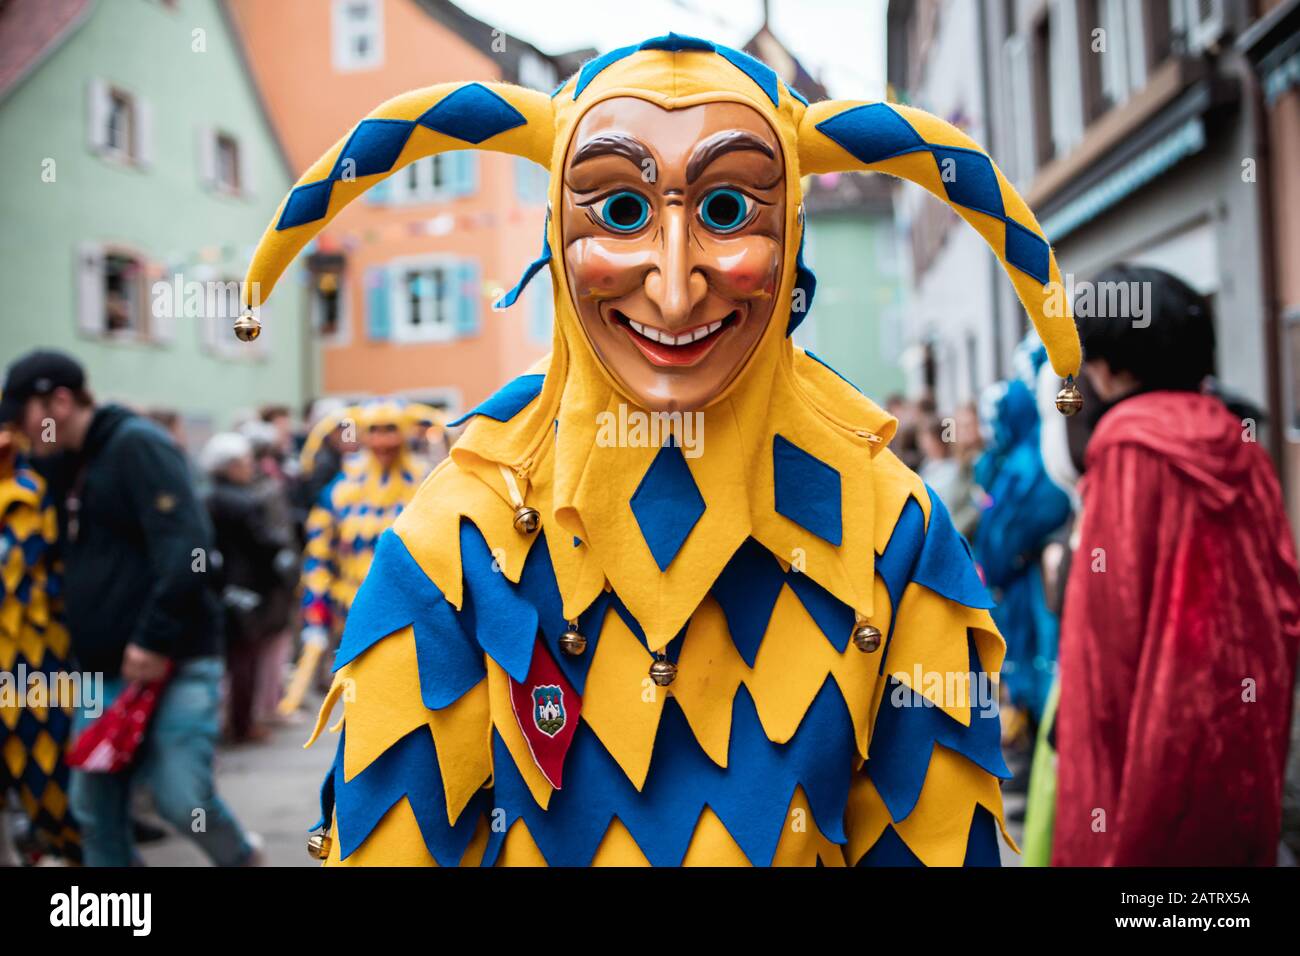 Bajass de Waldkirch - hermosa figura tonta en un manto amarillo-azul con una curiosa expresión en el desfile de carnaval en Staufen, al sur de Alemania Foto de stock